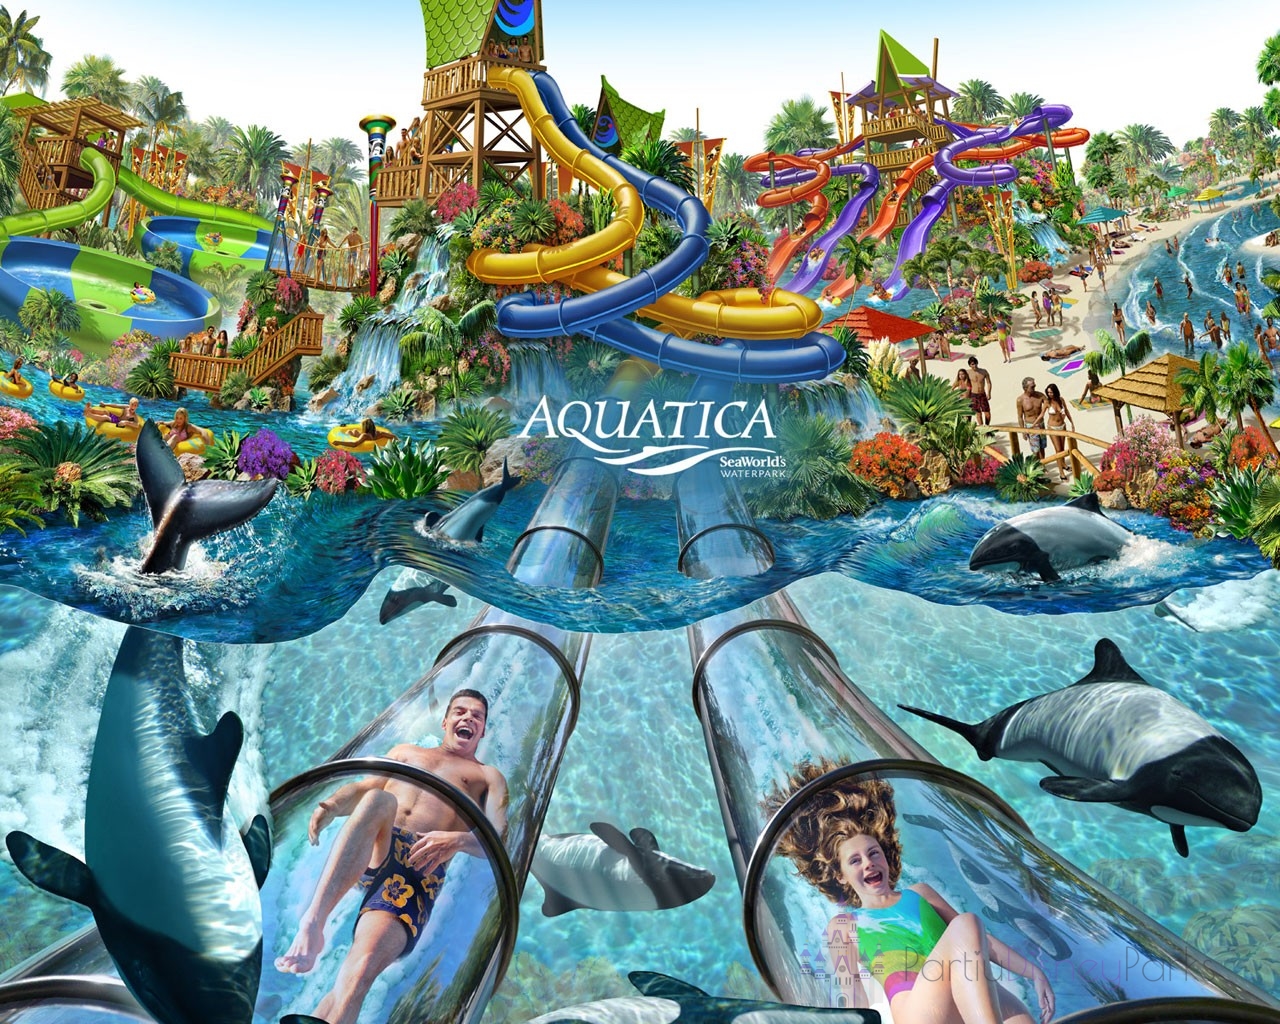 Parque Aquatica - Seaworld Aquatic Park